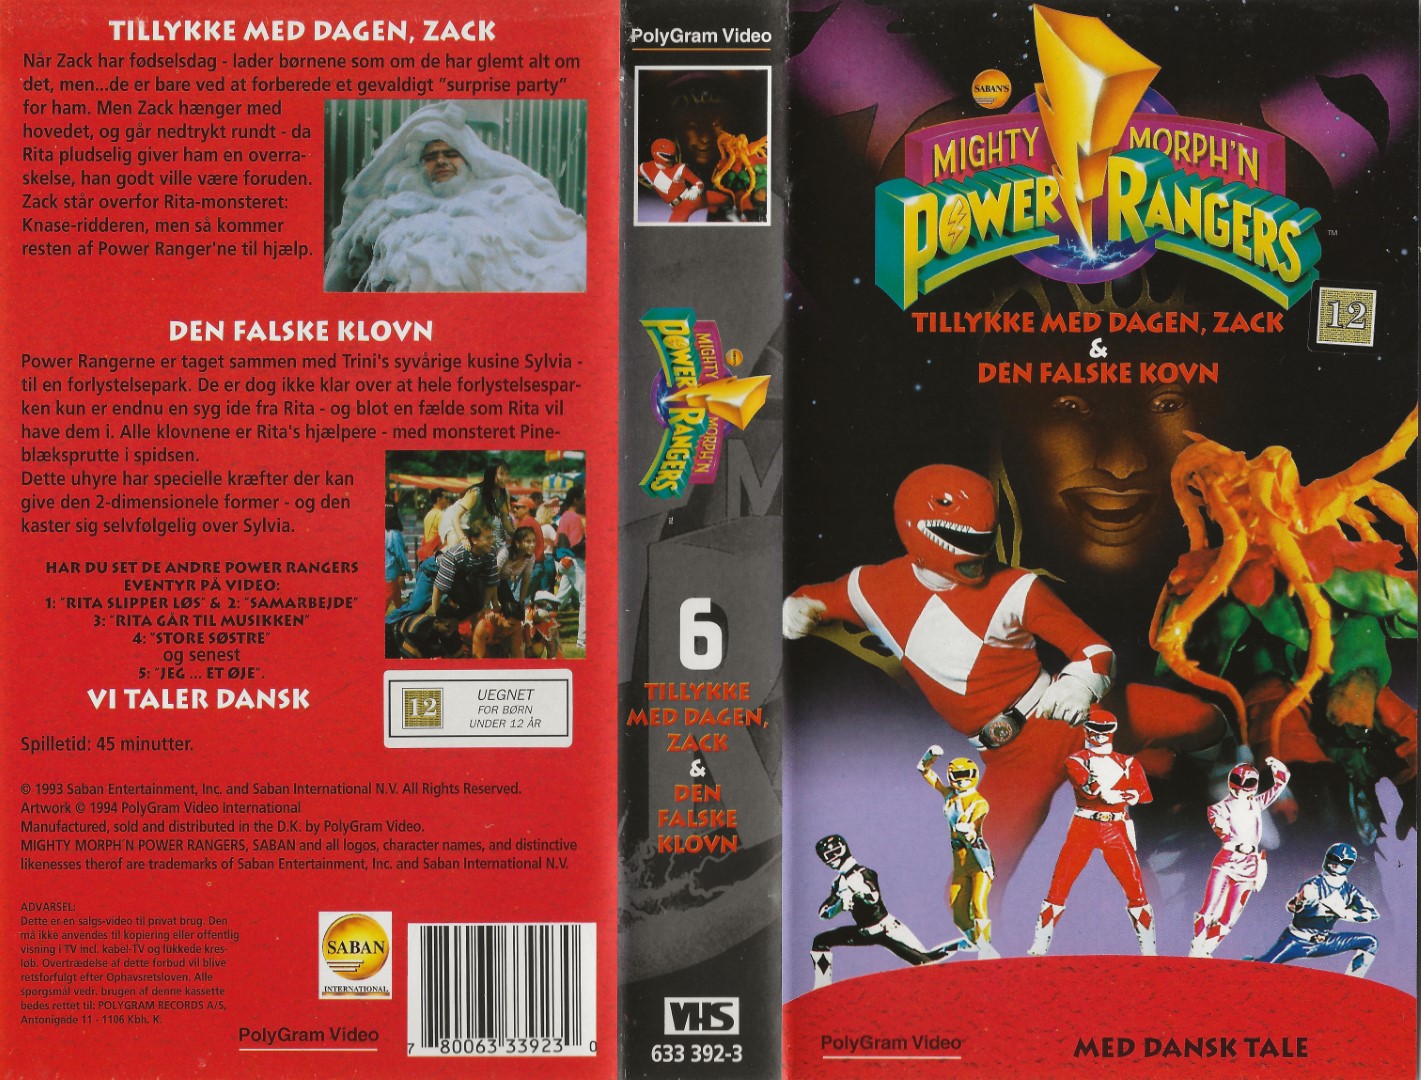 Mighty Morph'n Power Rangers (6) - 